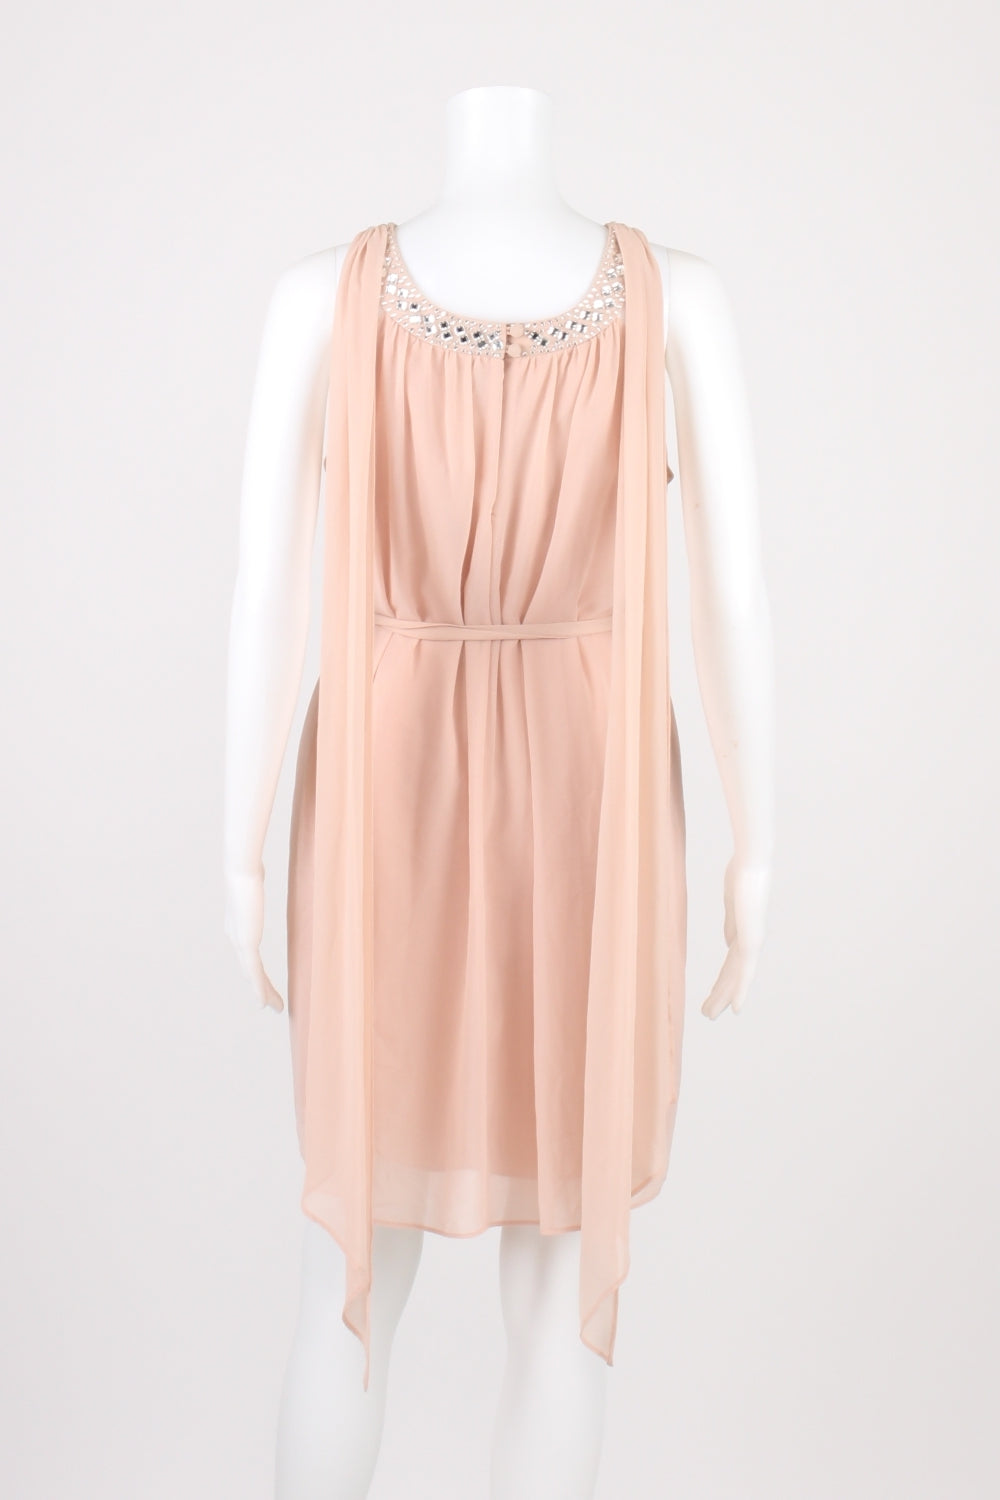 Forever New Pink Beaded Sleeveless Dress 10